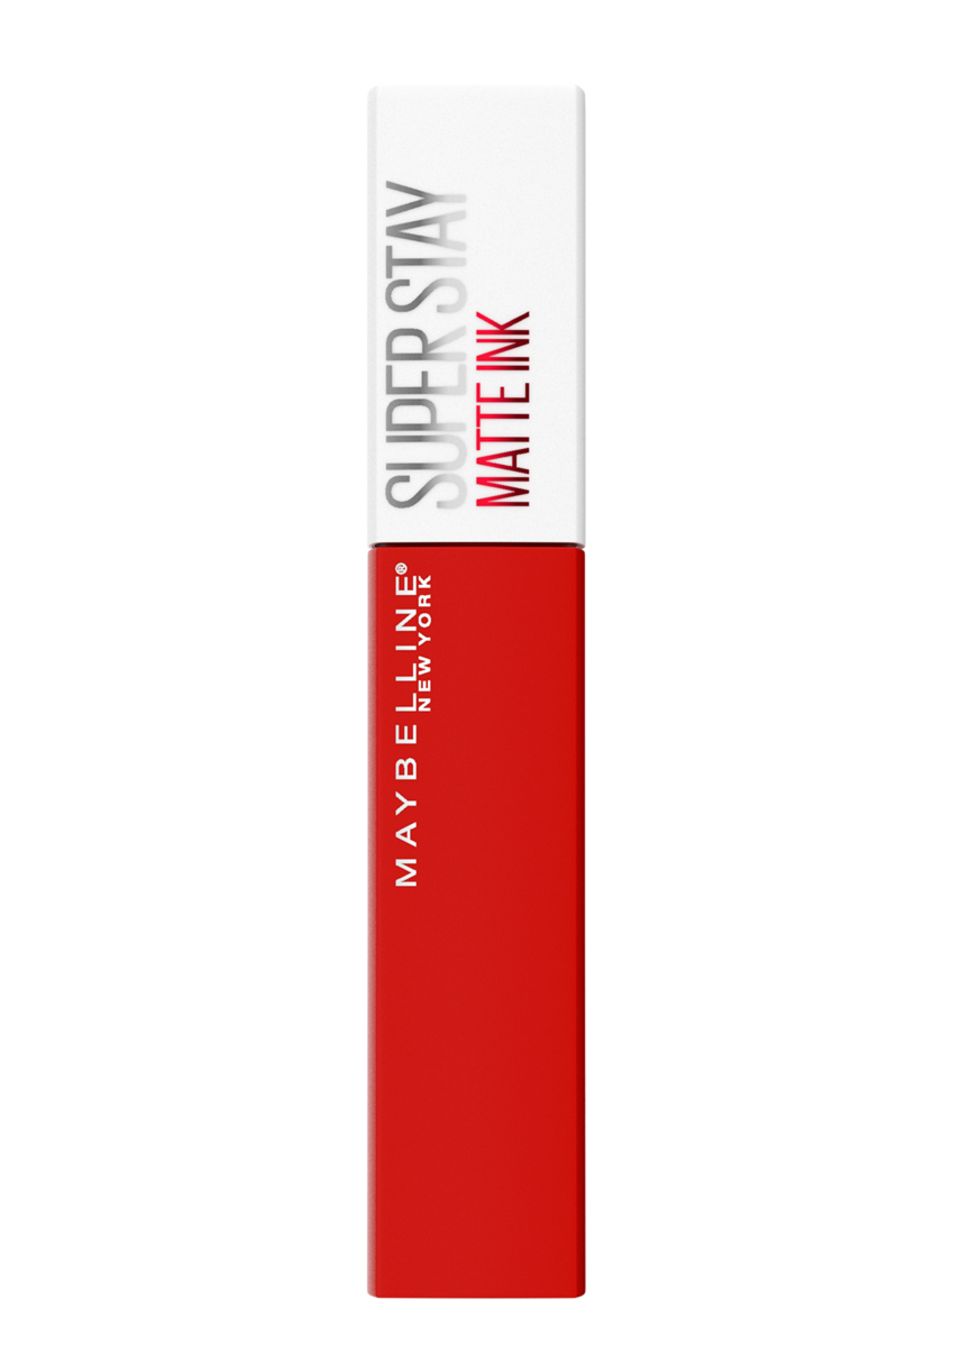 Es geht wirklich nichts für den perfekten roten Lippenstift. Der Super Stay Matte Ink von Maybelline verspricht intensive Farbe, mattes Finish und 16 Stunden Halt. Was will man mehr? Ca. 9 Euro.